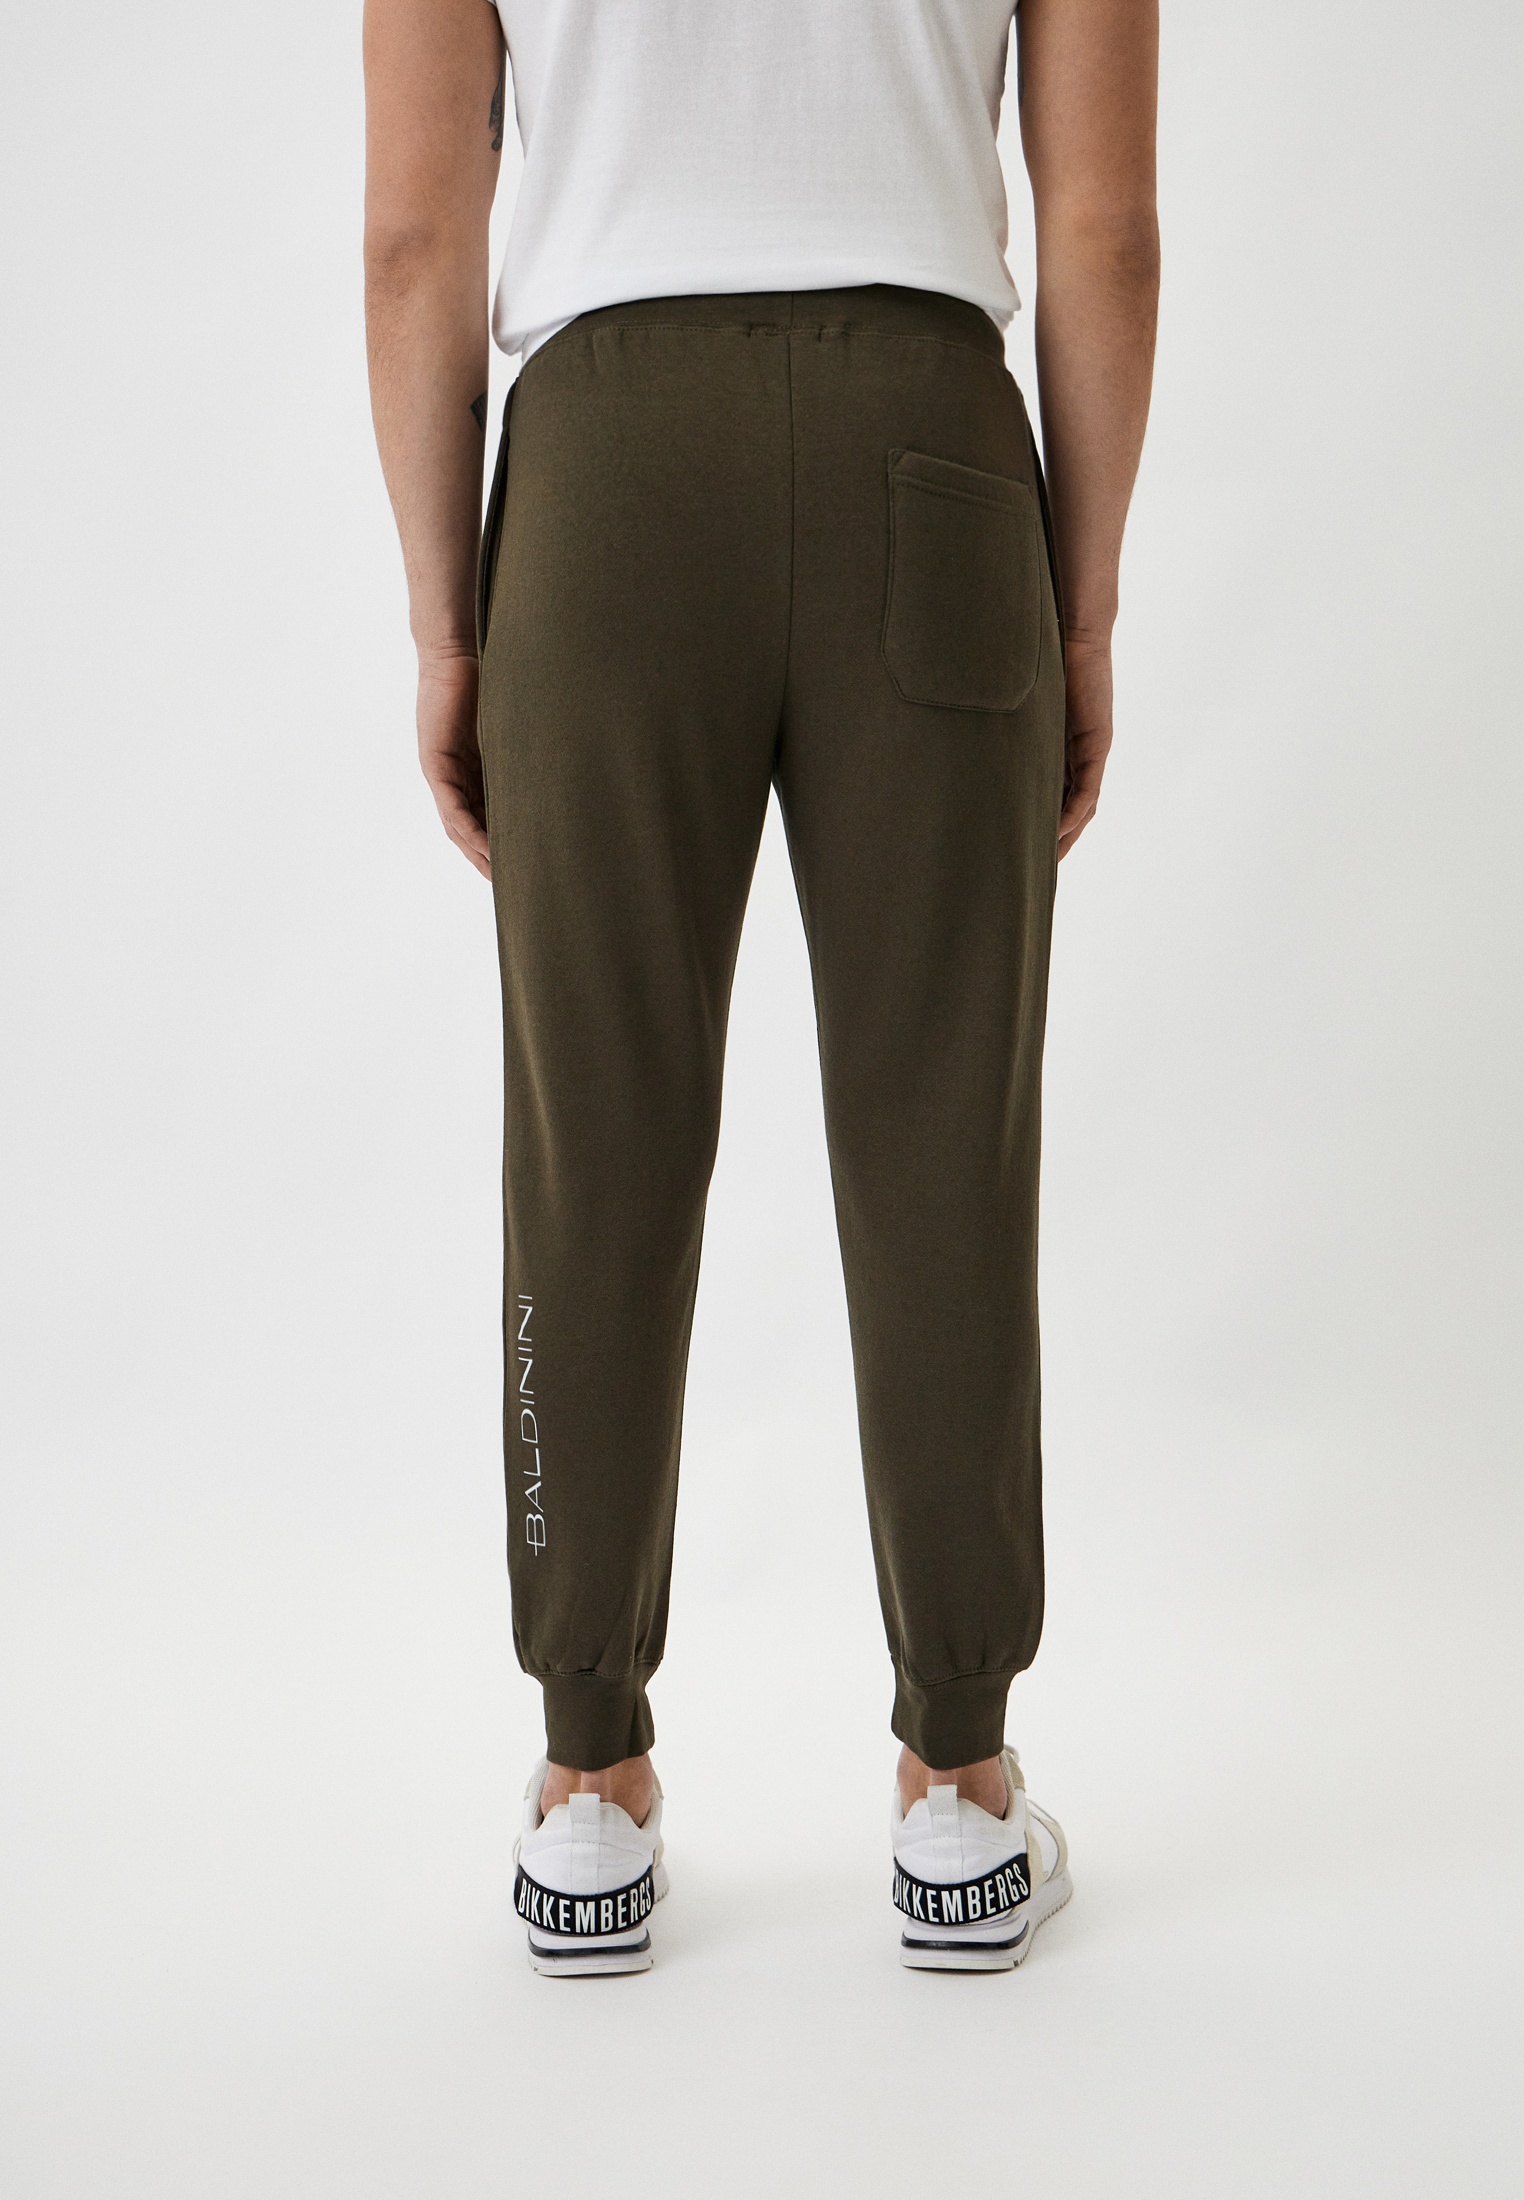 Мужские спортивные брюки Baldinini (Балдинини) B-OLM-M008: изображение 3